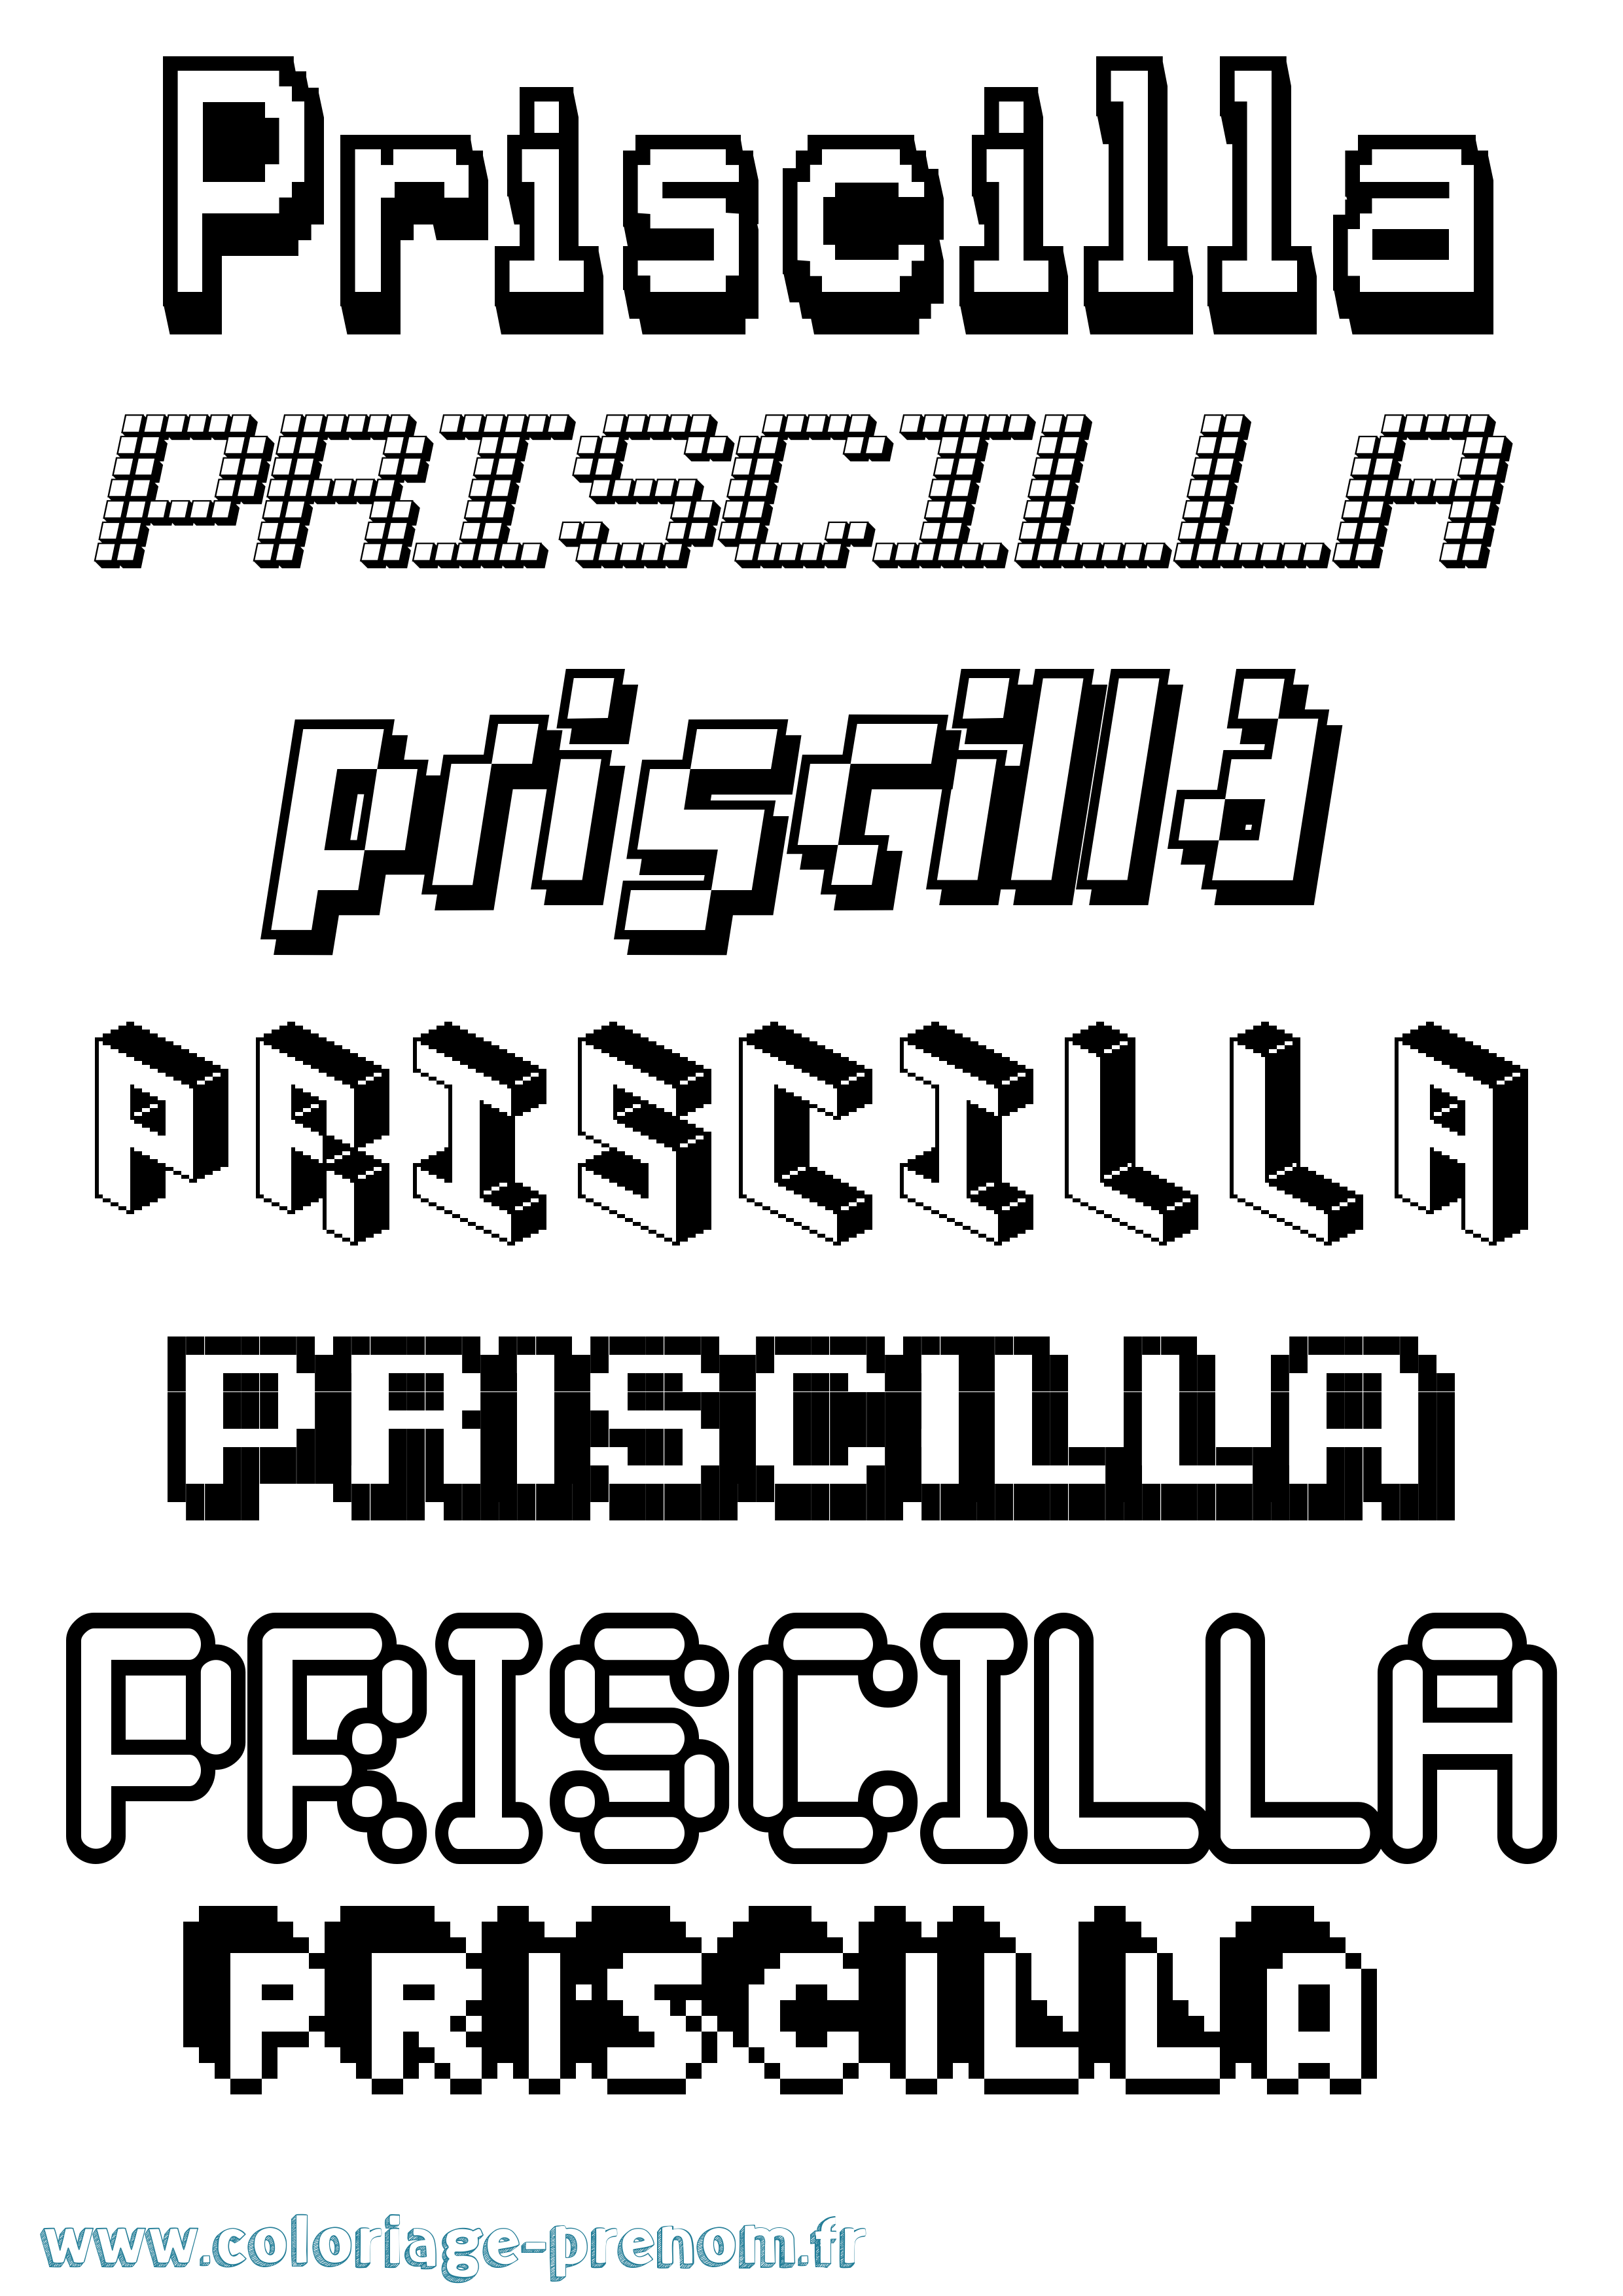 Coloriage prénom Priscilla Pixel